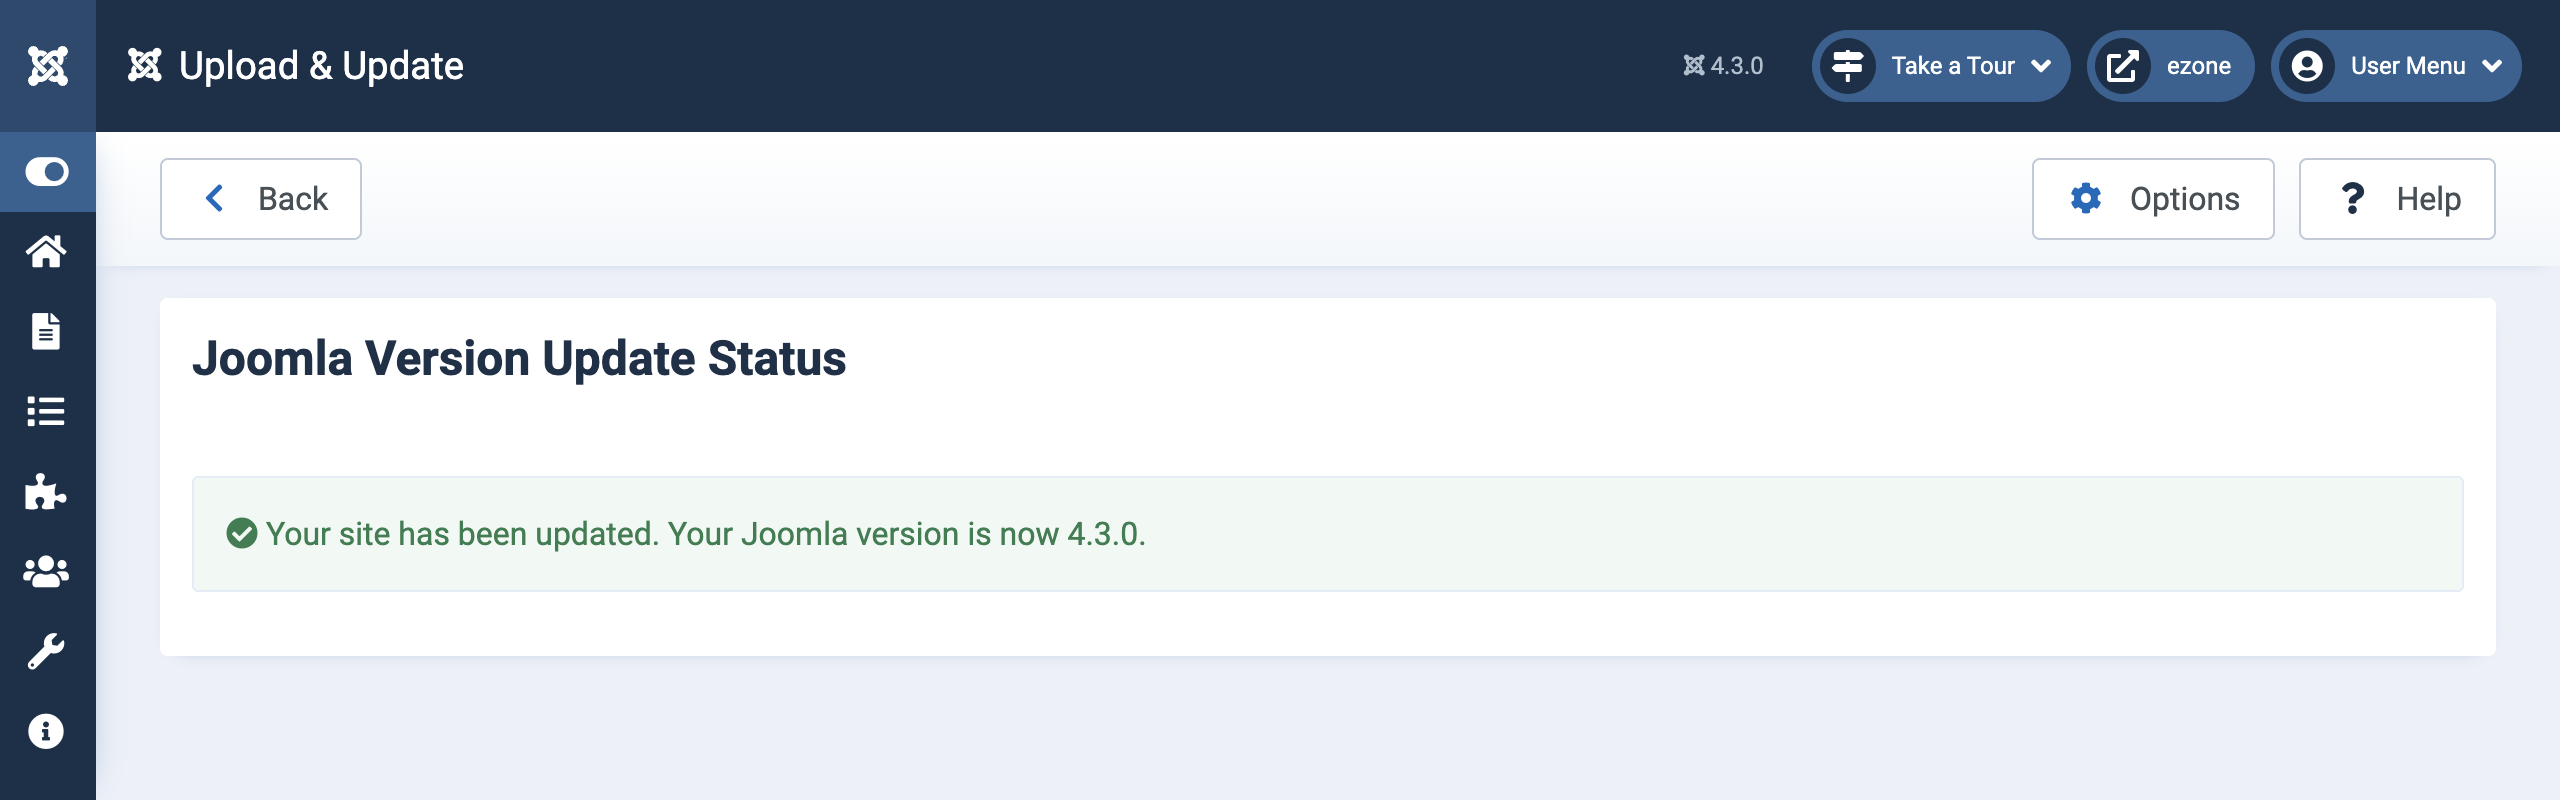 Joomla Version Update Status screenshot with an alert showing the site has been updated.